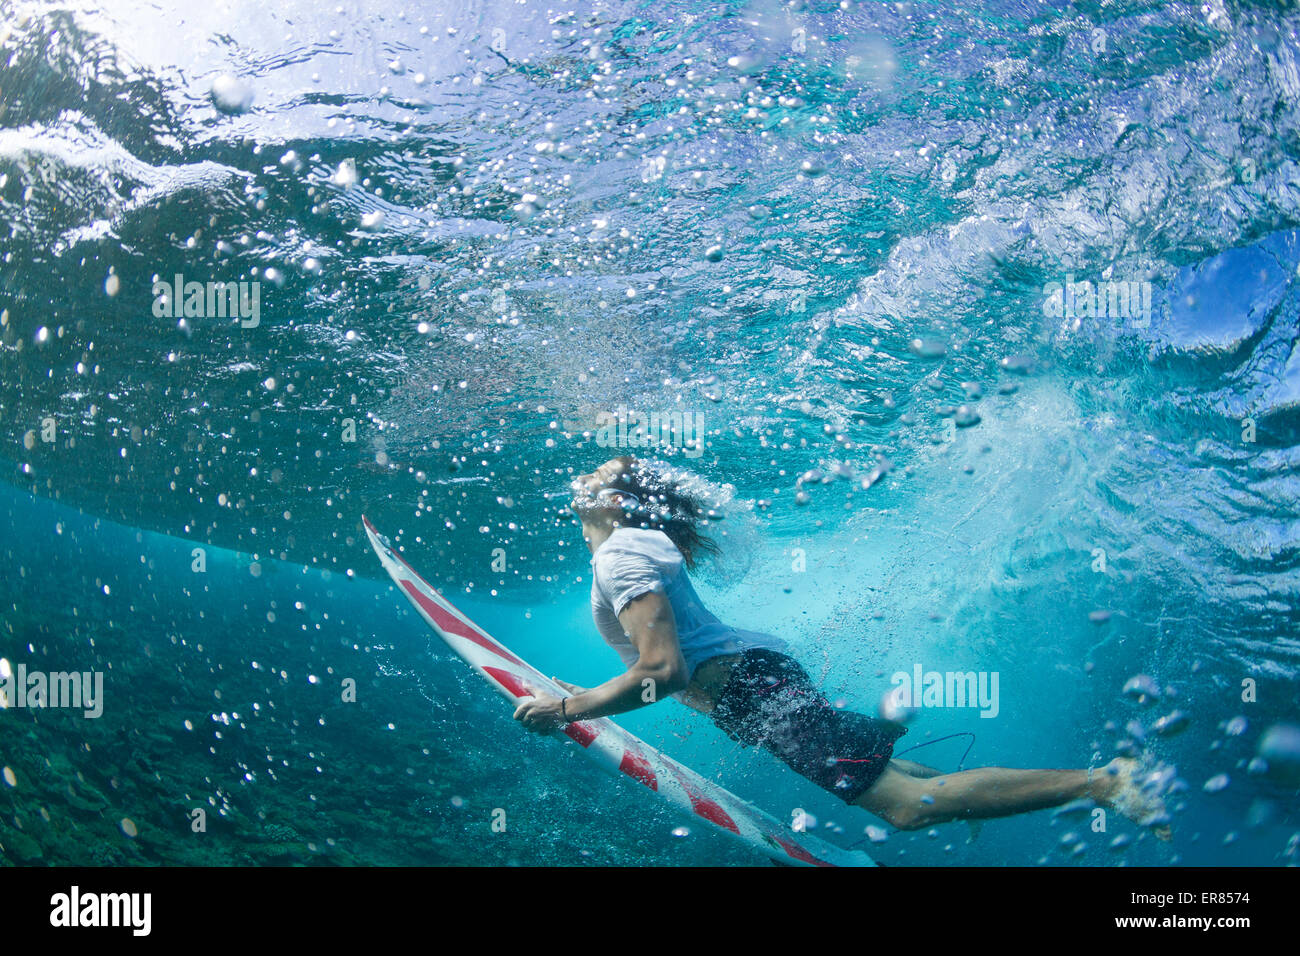 Vista submarina de un surfista pato de buceo bajo una ola Foto de stock